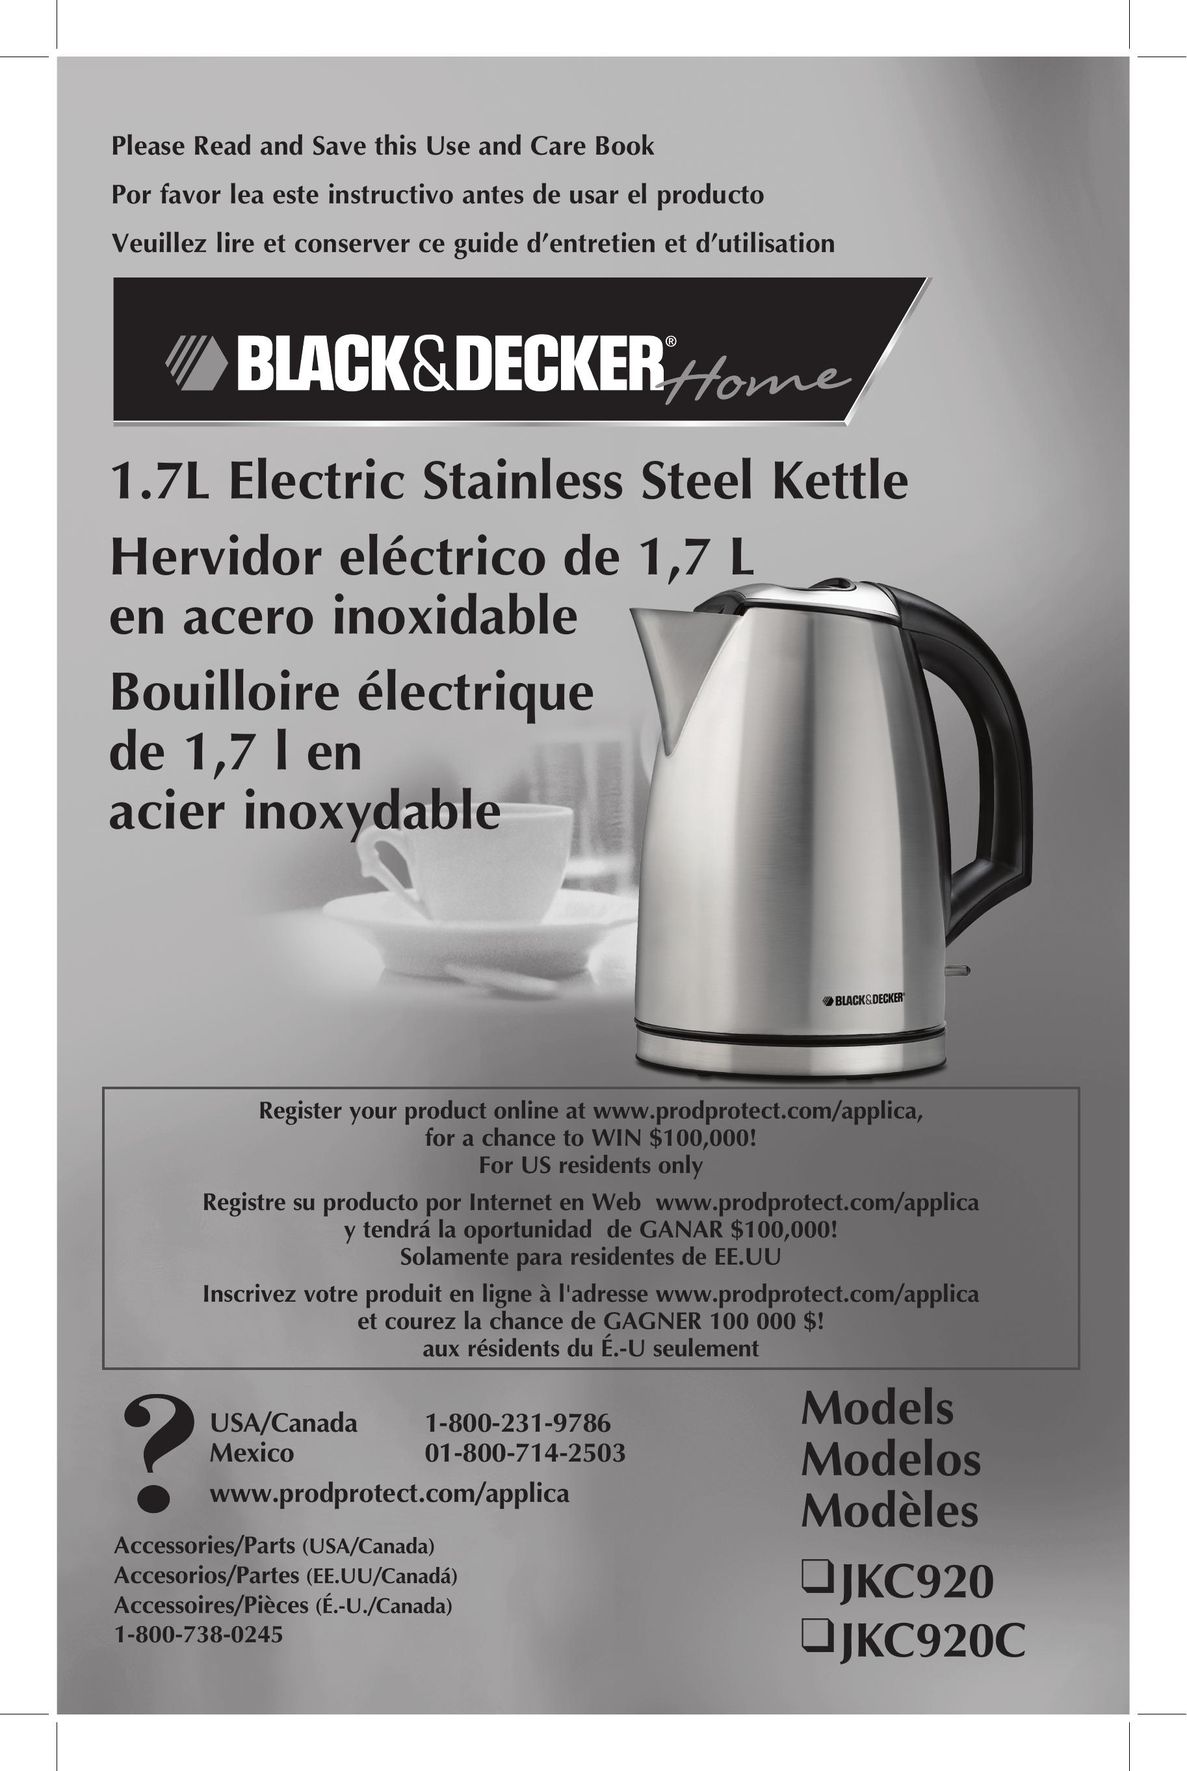 Black & Decker JKC920C Hot Beverage Maker User Manual